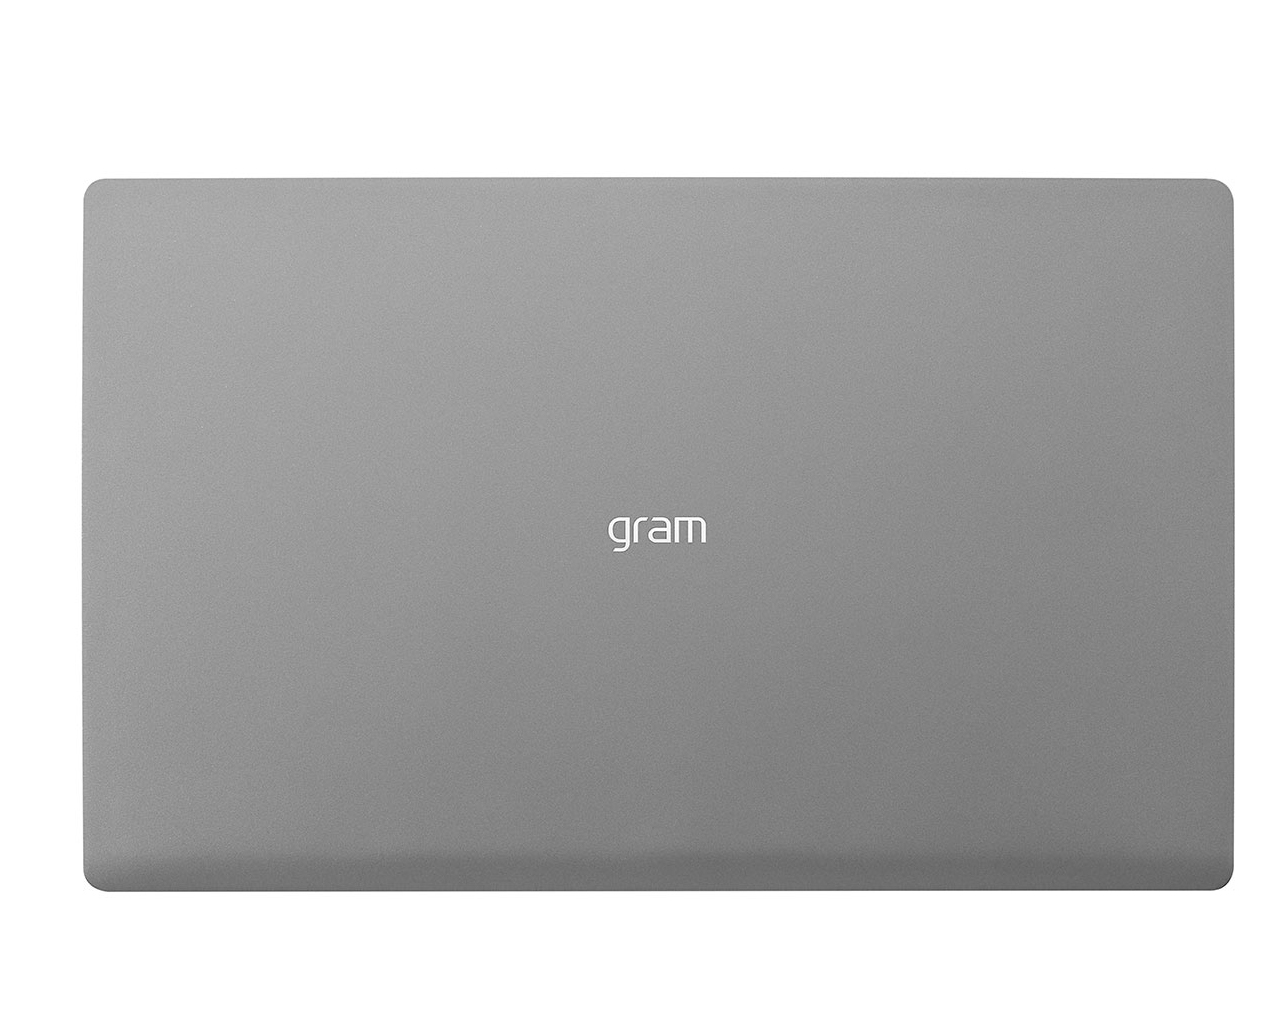 LG Gram 15 Z90N-U.ARS5U1